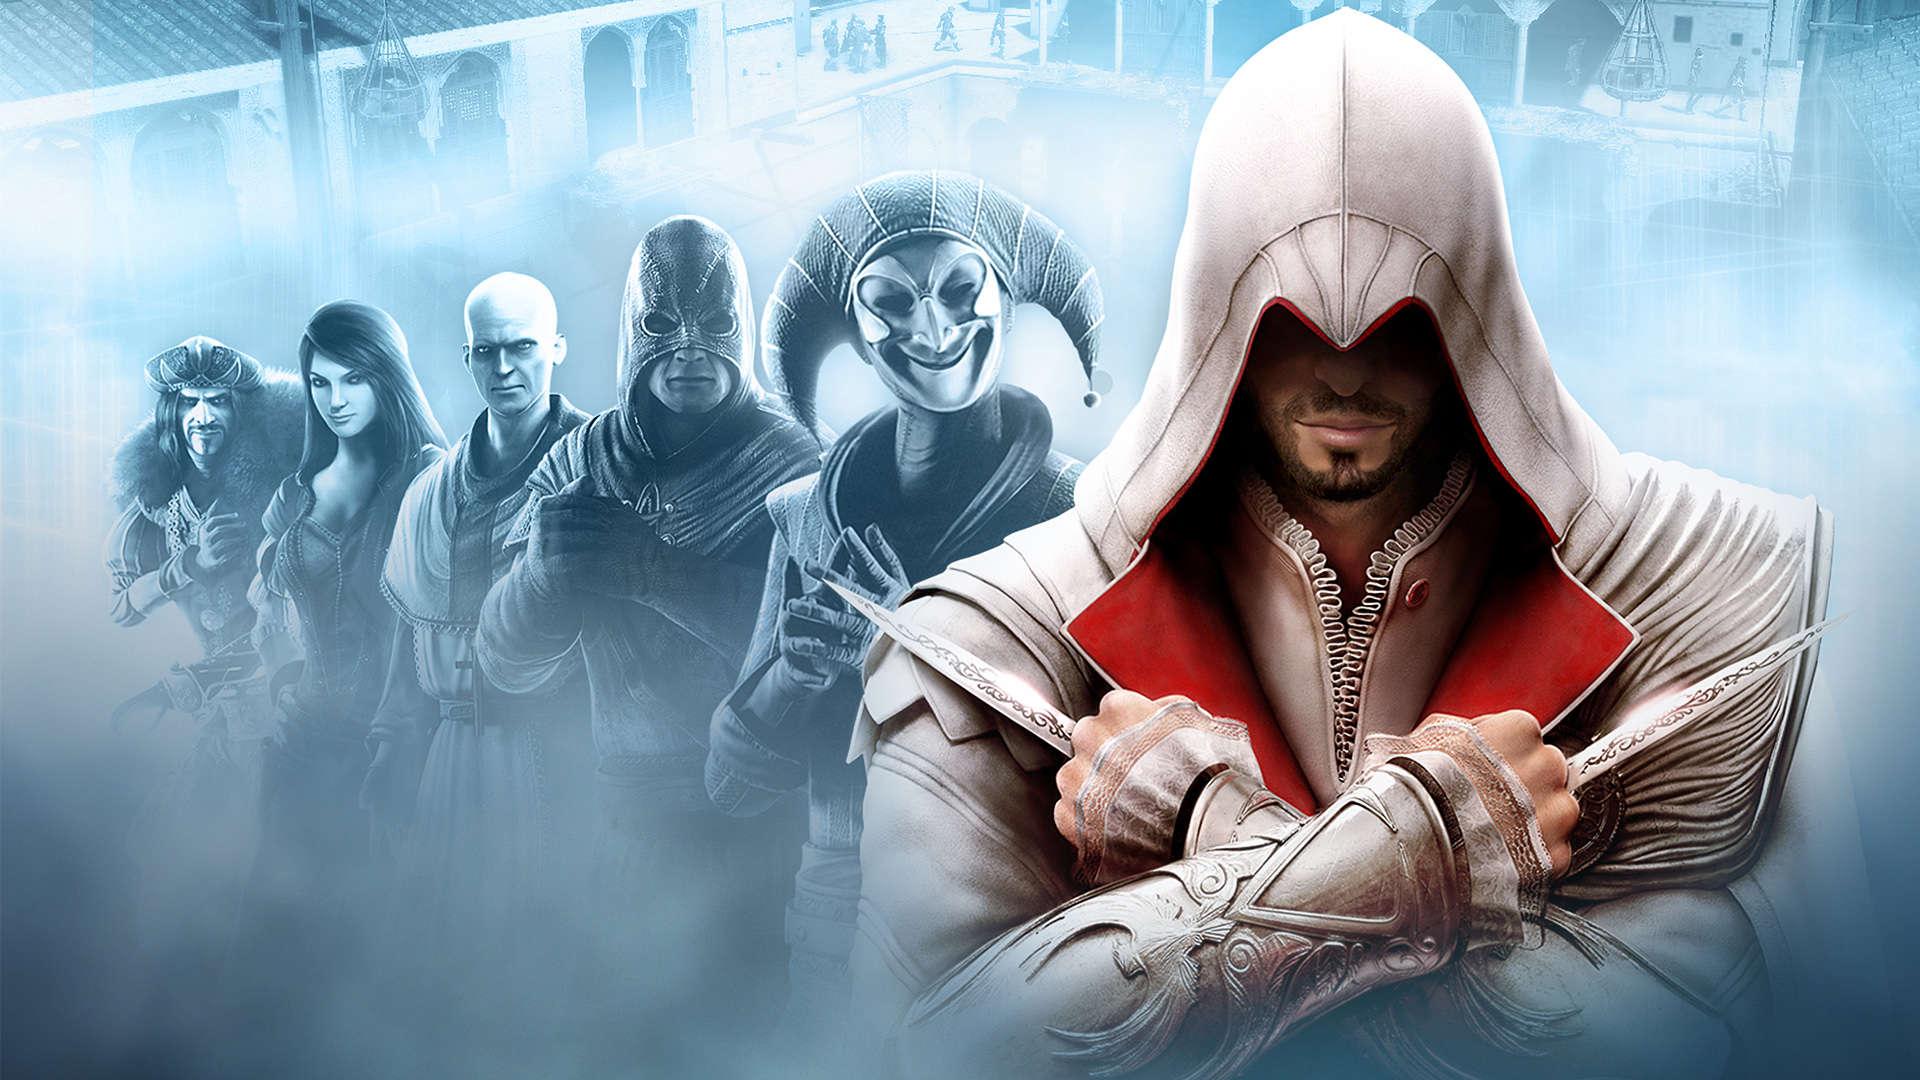 Assassins Creed 4 Wallpaper Widescreen